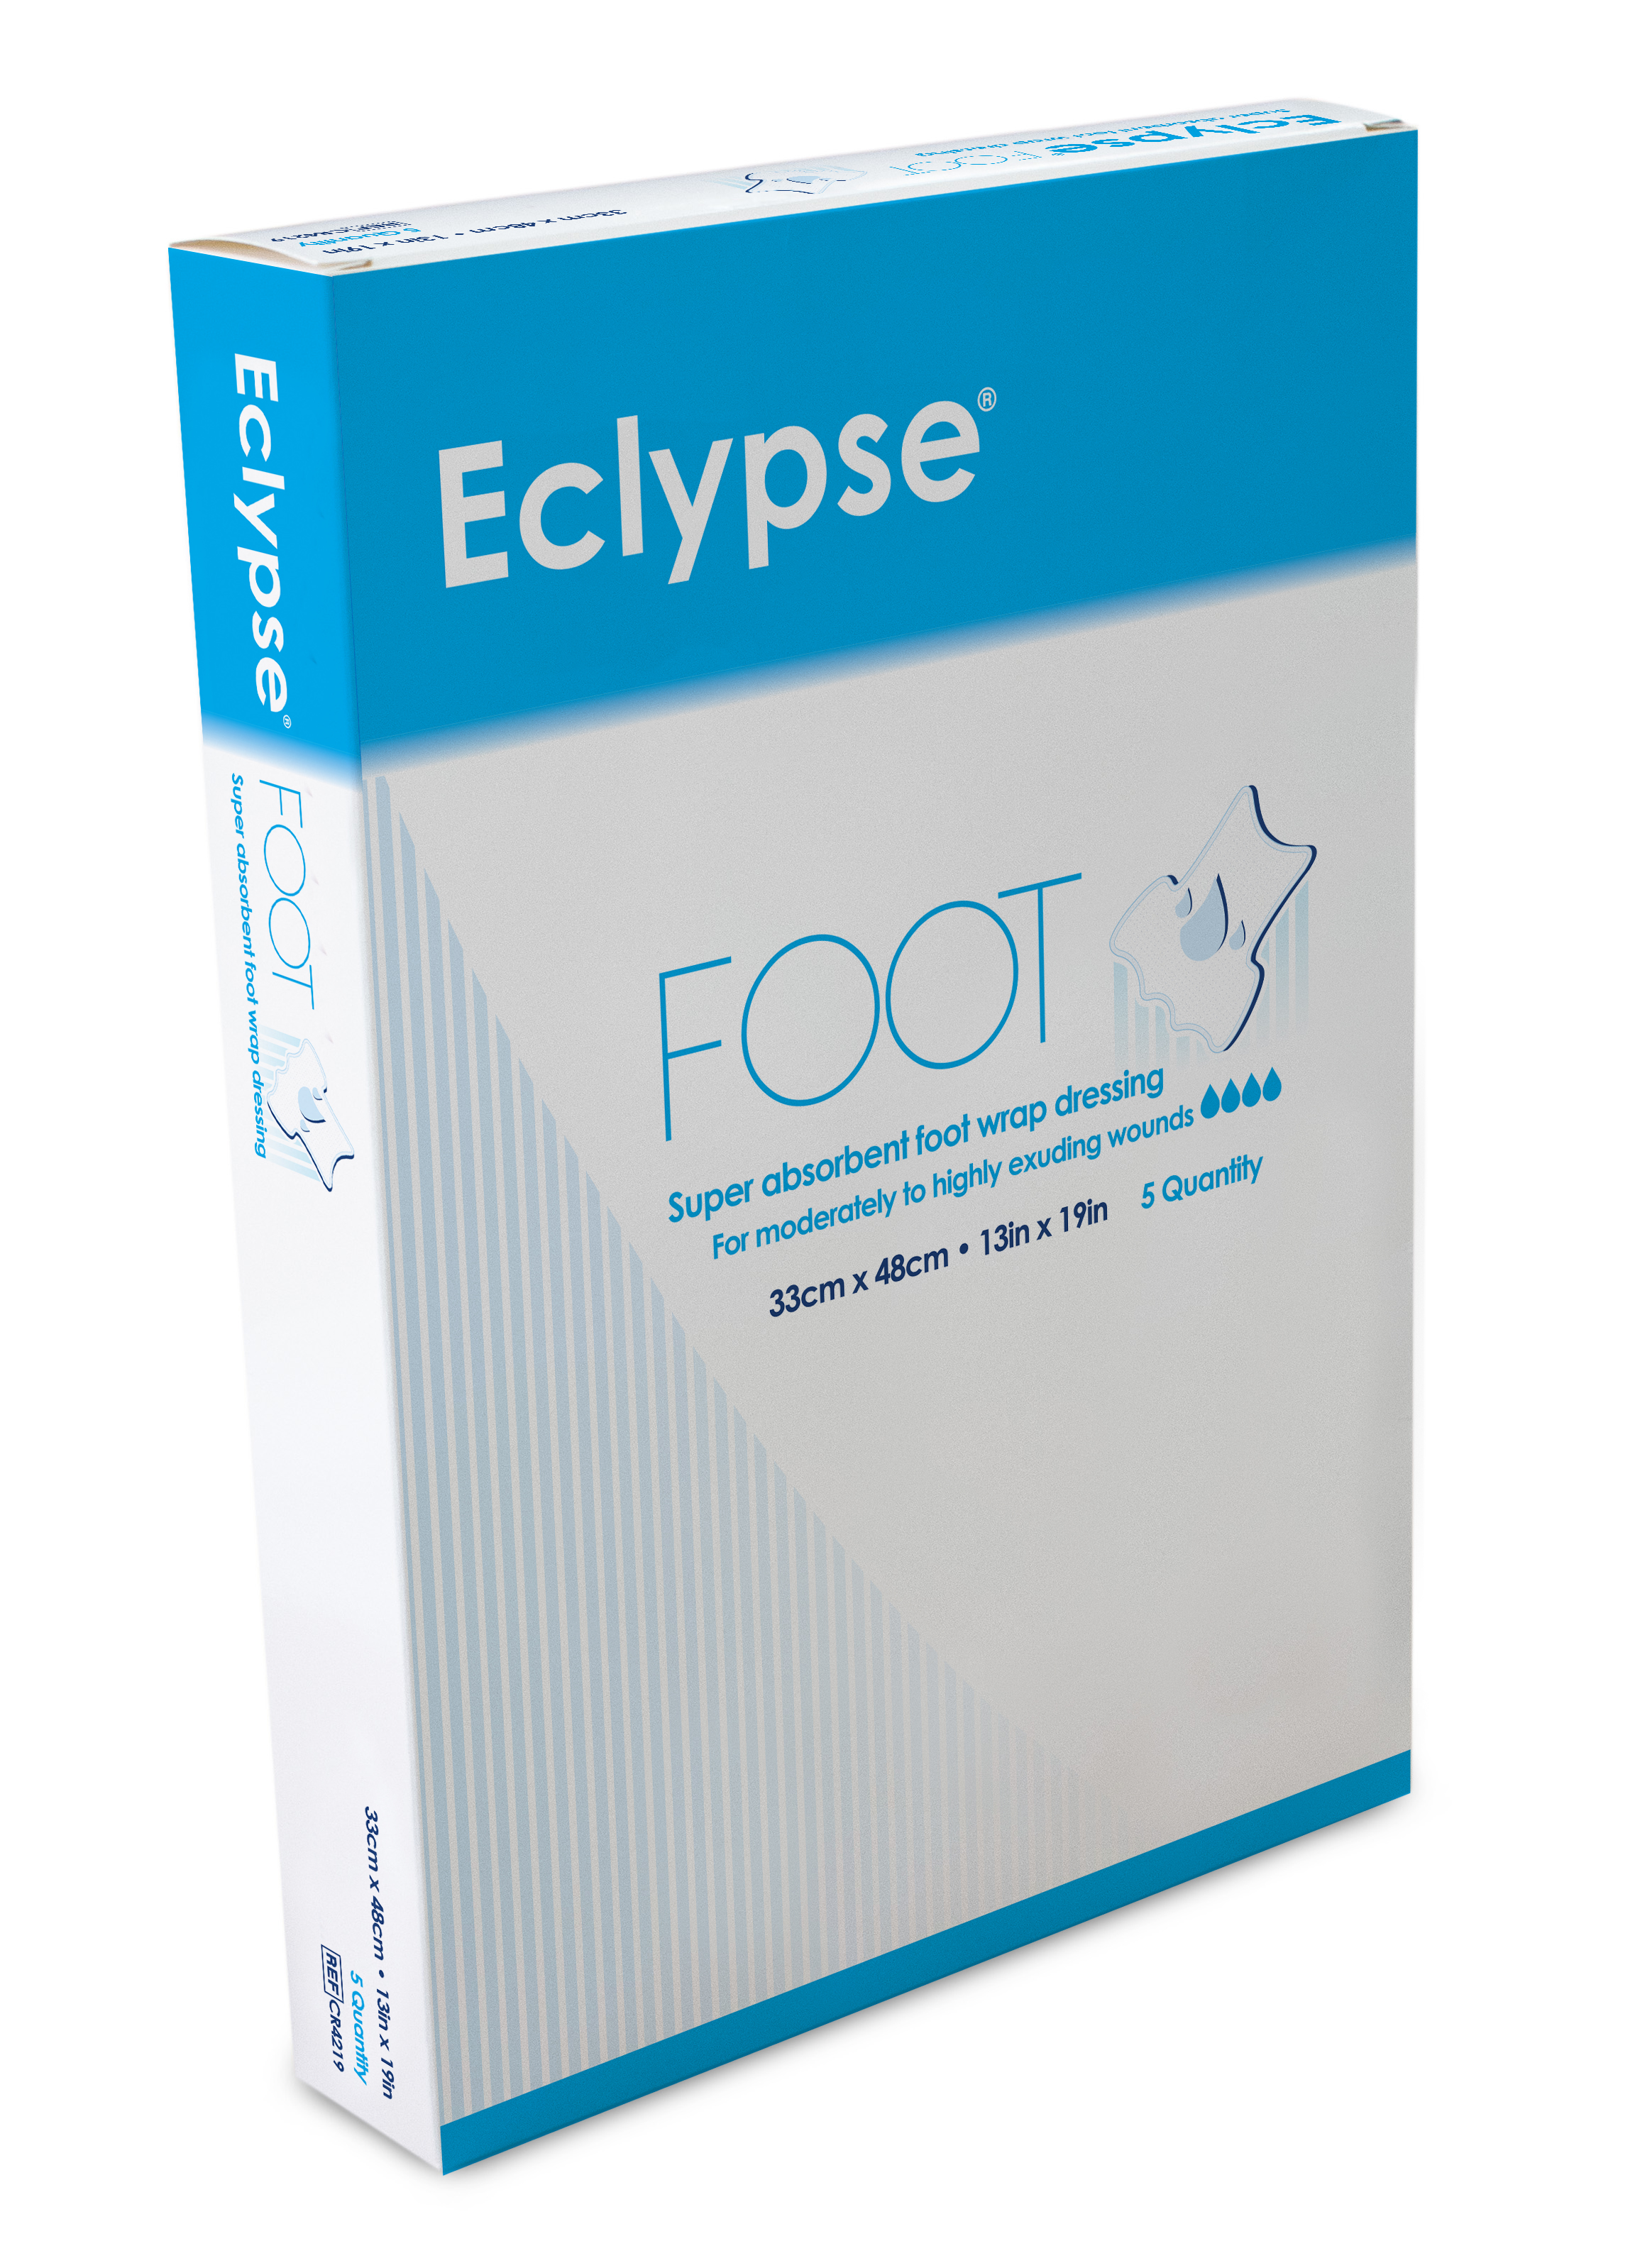 Eclypse Foot